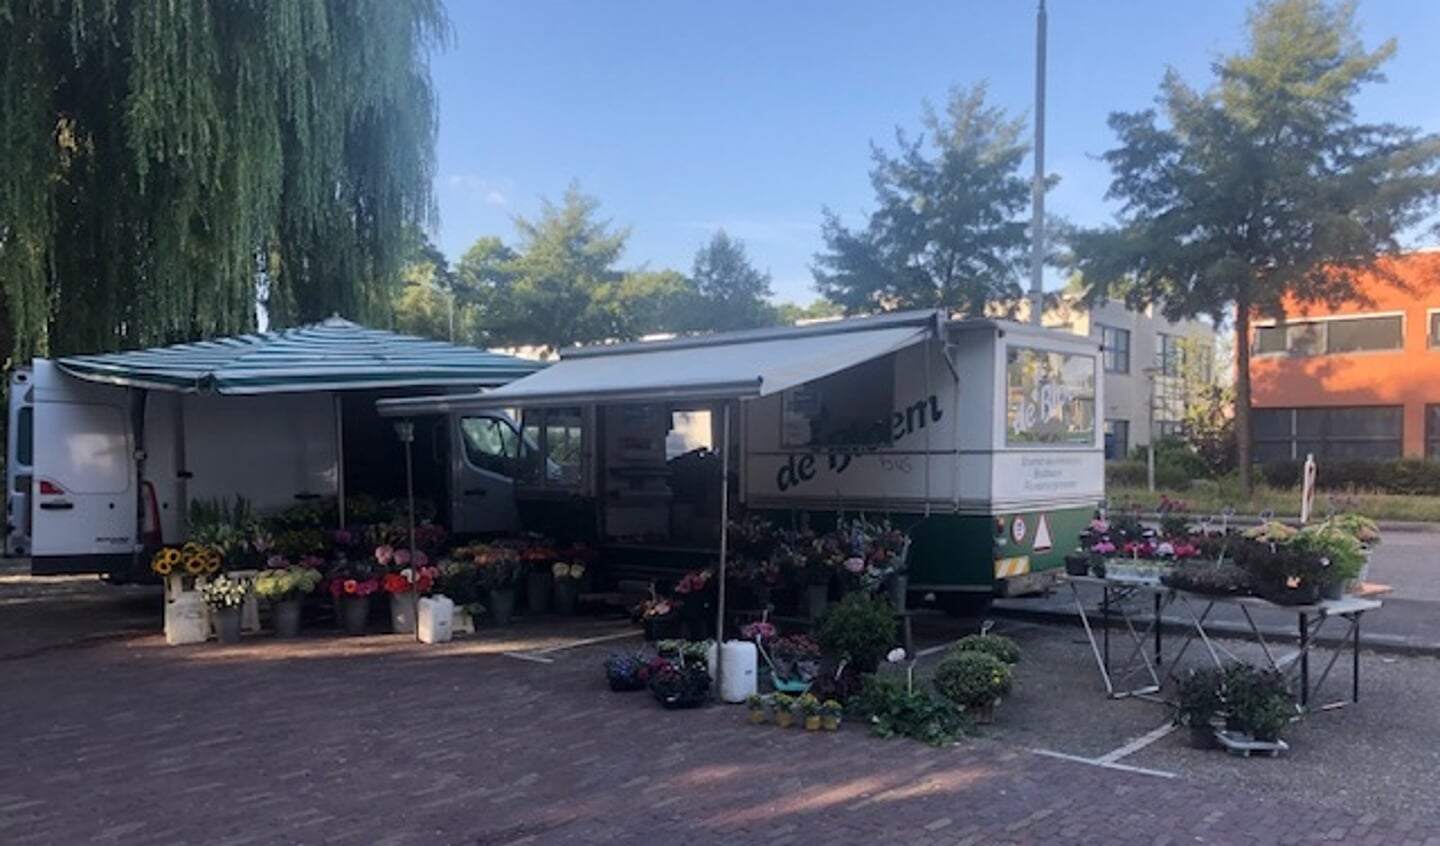 Mike de Groot verkoopt al dertig jaar bloemen in zijn kiosk bij het Vijfhoekpark maar moet nu tijdelijk stoppen vanwege de geplande werkzaamheden op de kruising. 